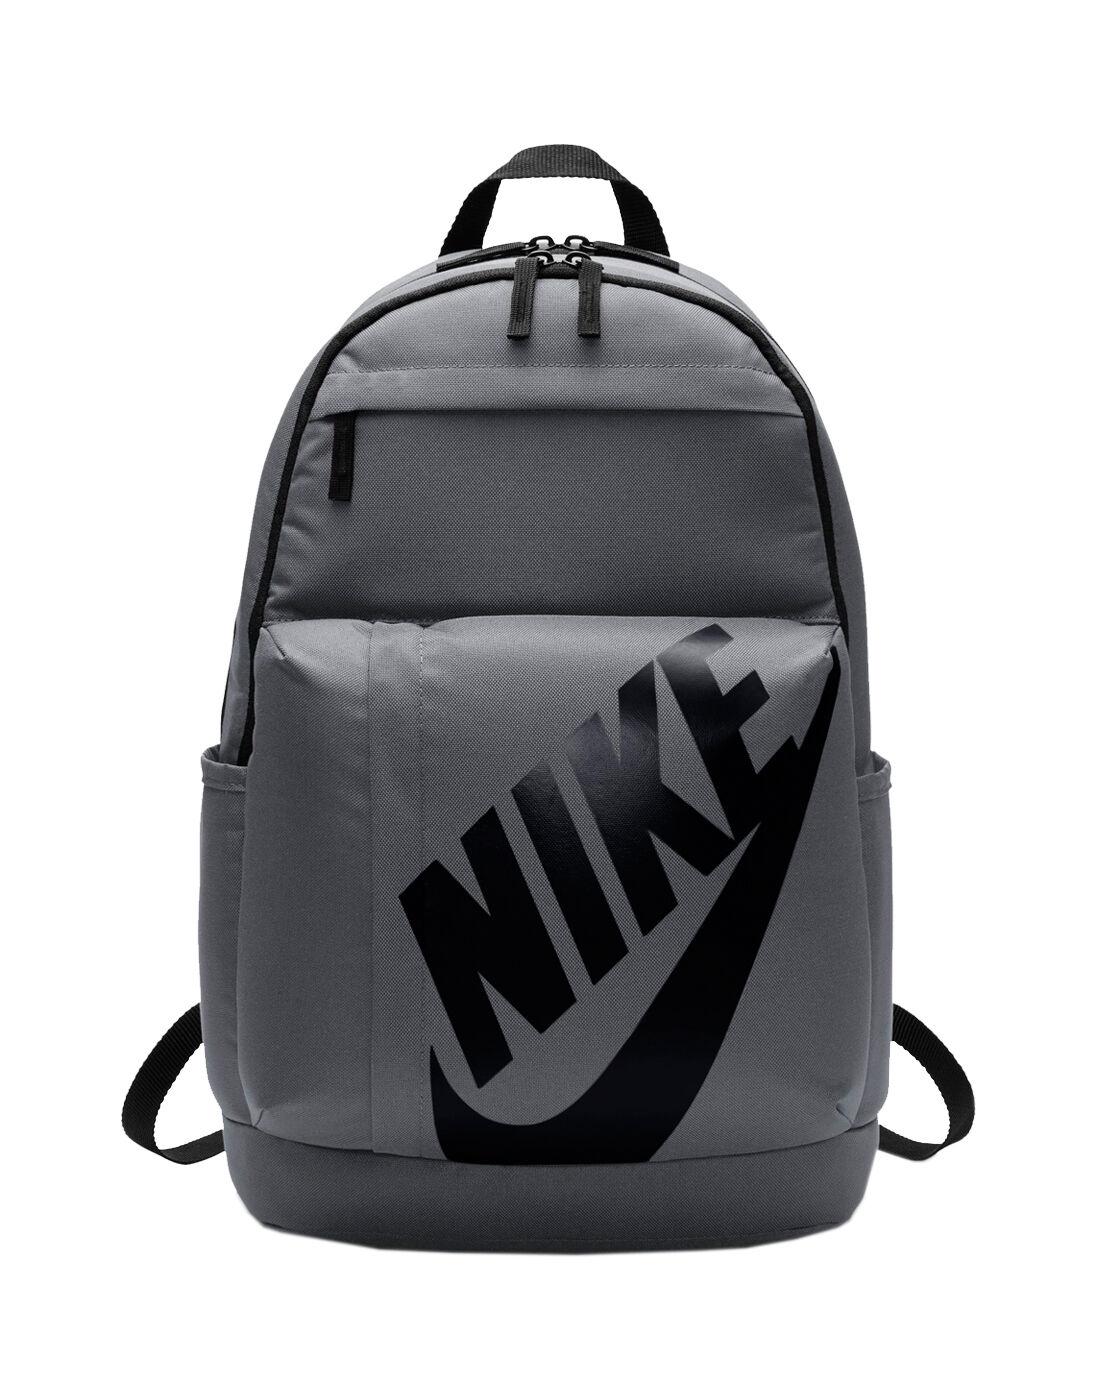 nike school bags black